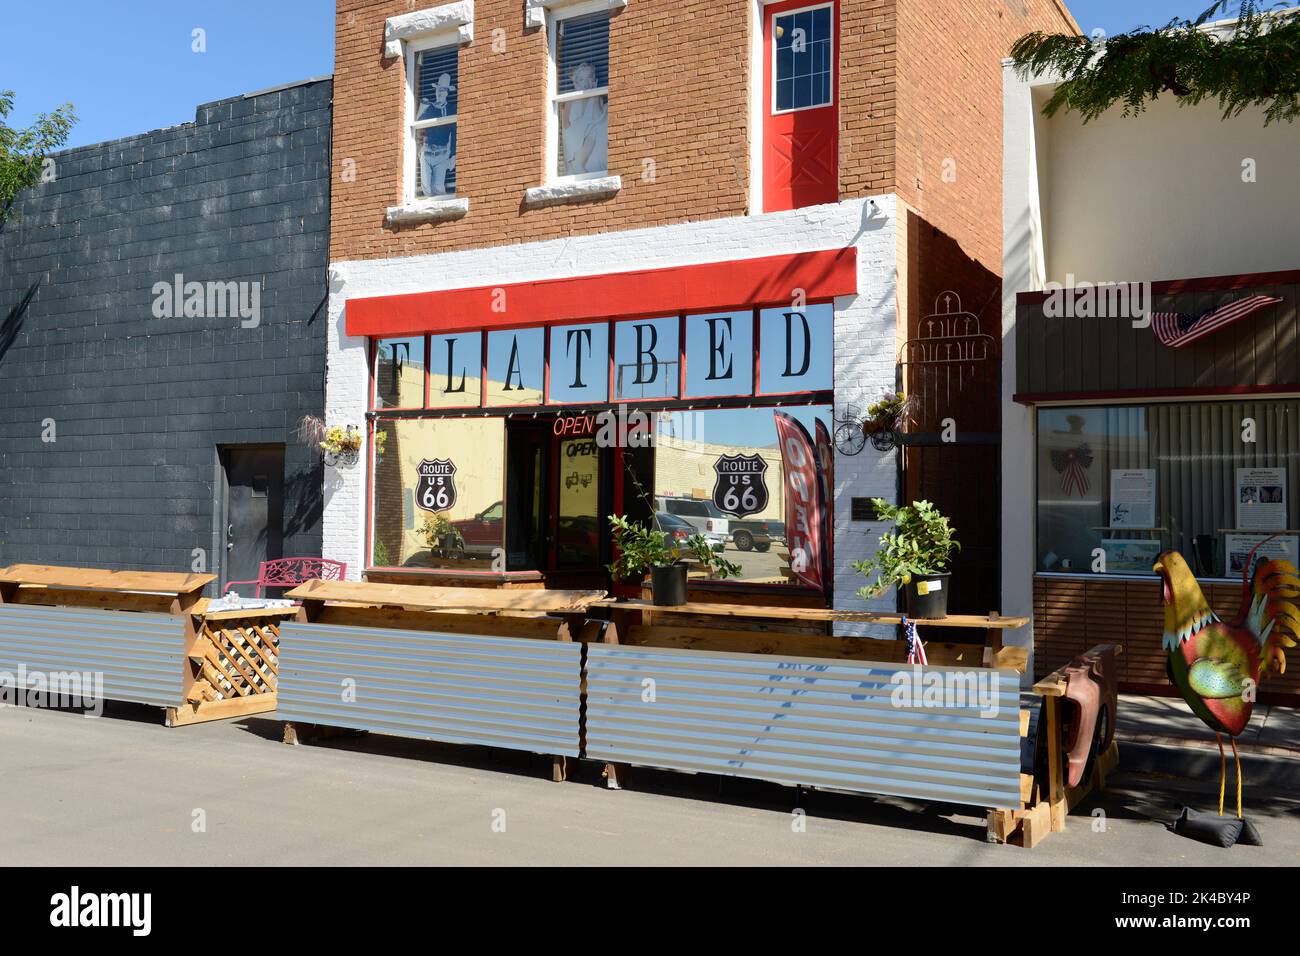 Das Flat Bed Cafe wurde nach einem Text in dem famous Lied von den Eagles in Winslow, Arizona, benannt Stockfoto